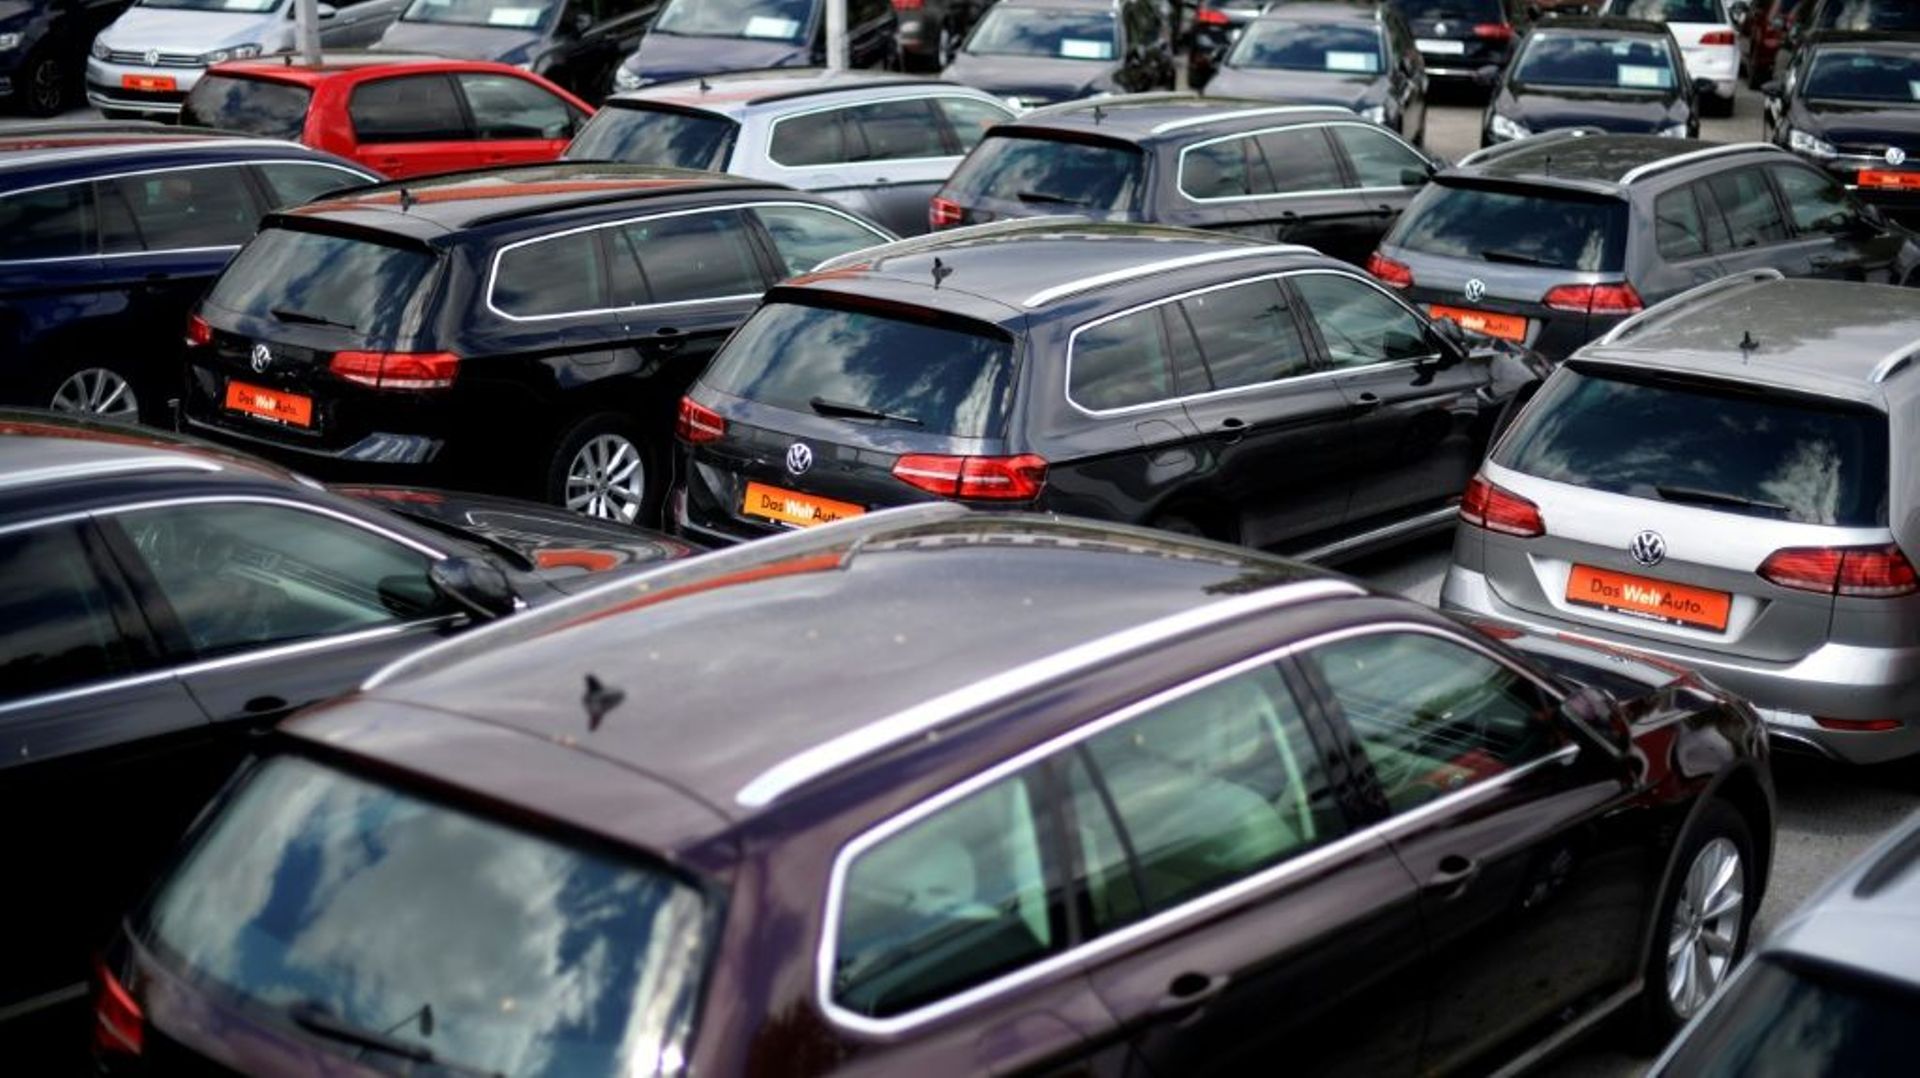 Le nombre d'immatriculations de voitures particulières neuves en Europe a progressé de 3,1% sur un an en septembre